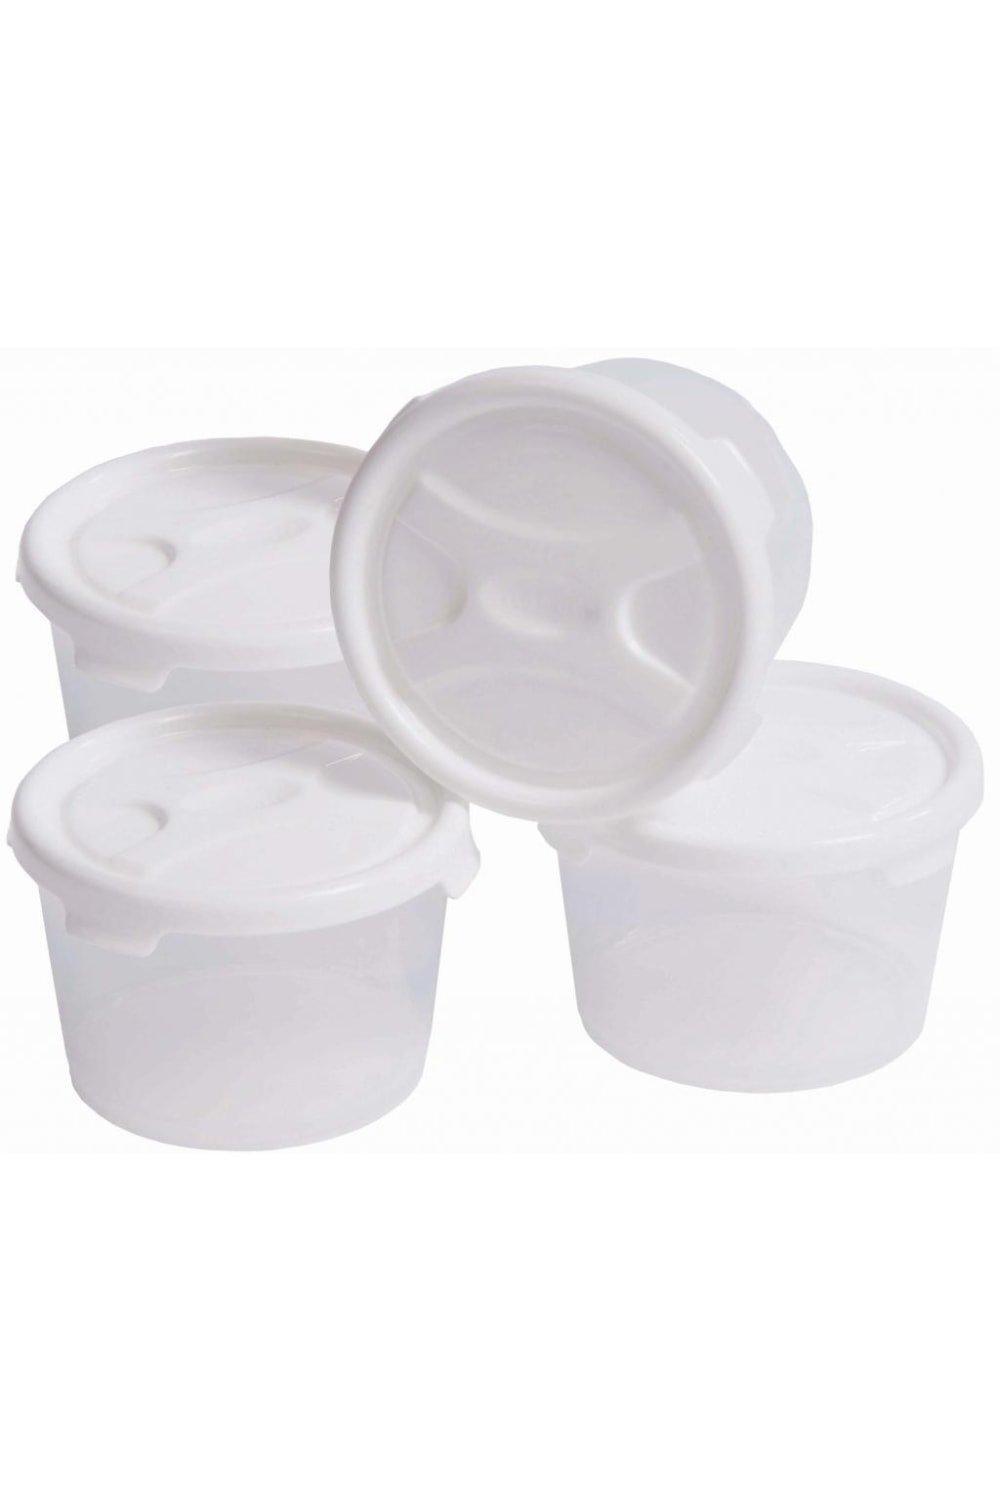 Набор для хранения продуктов Handy Pots (4 шт.) Wham, белый